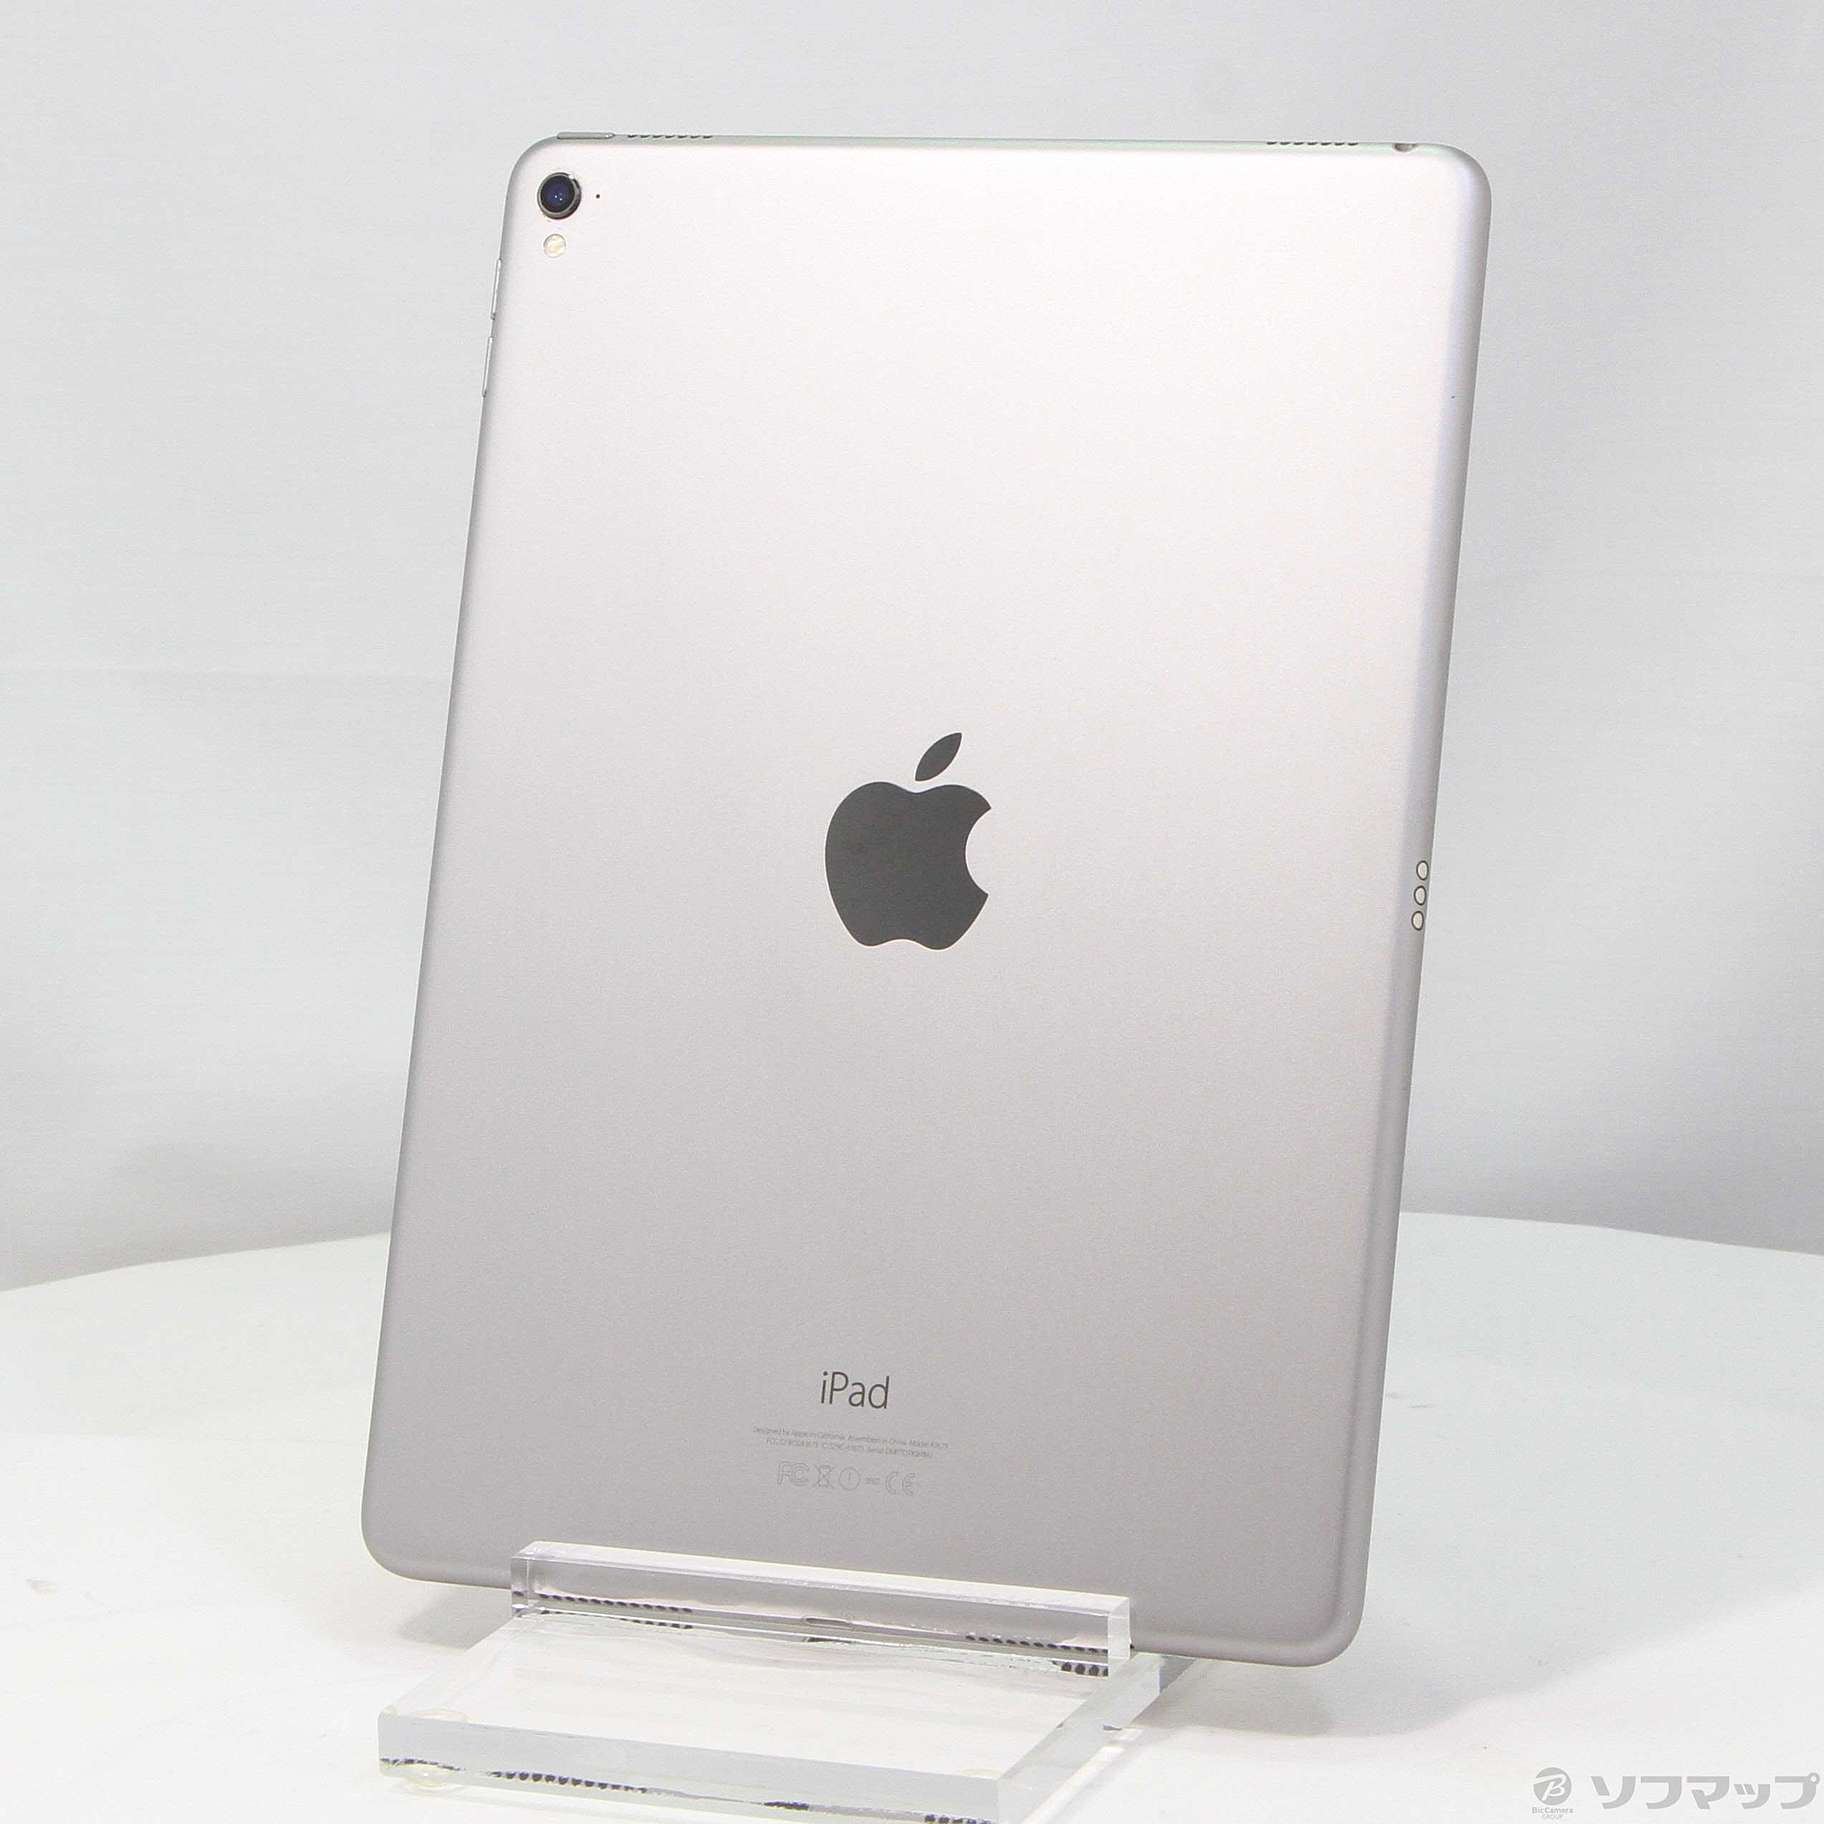 ◇セール特価品◇ Apple アップル iPad Pro 9.7インチ 128GB スペースグレイ MLMV2J A Wi-Fi 